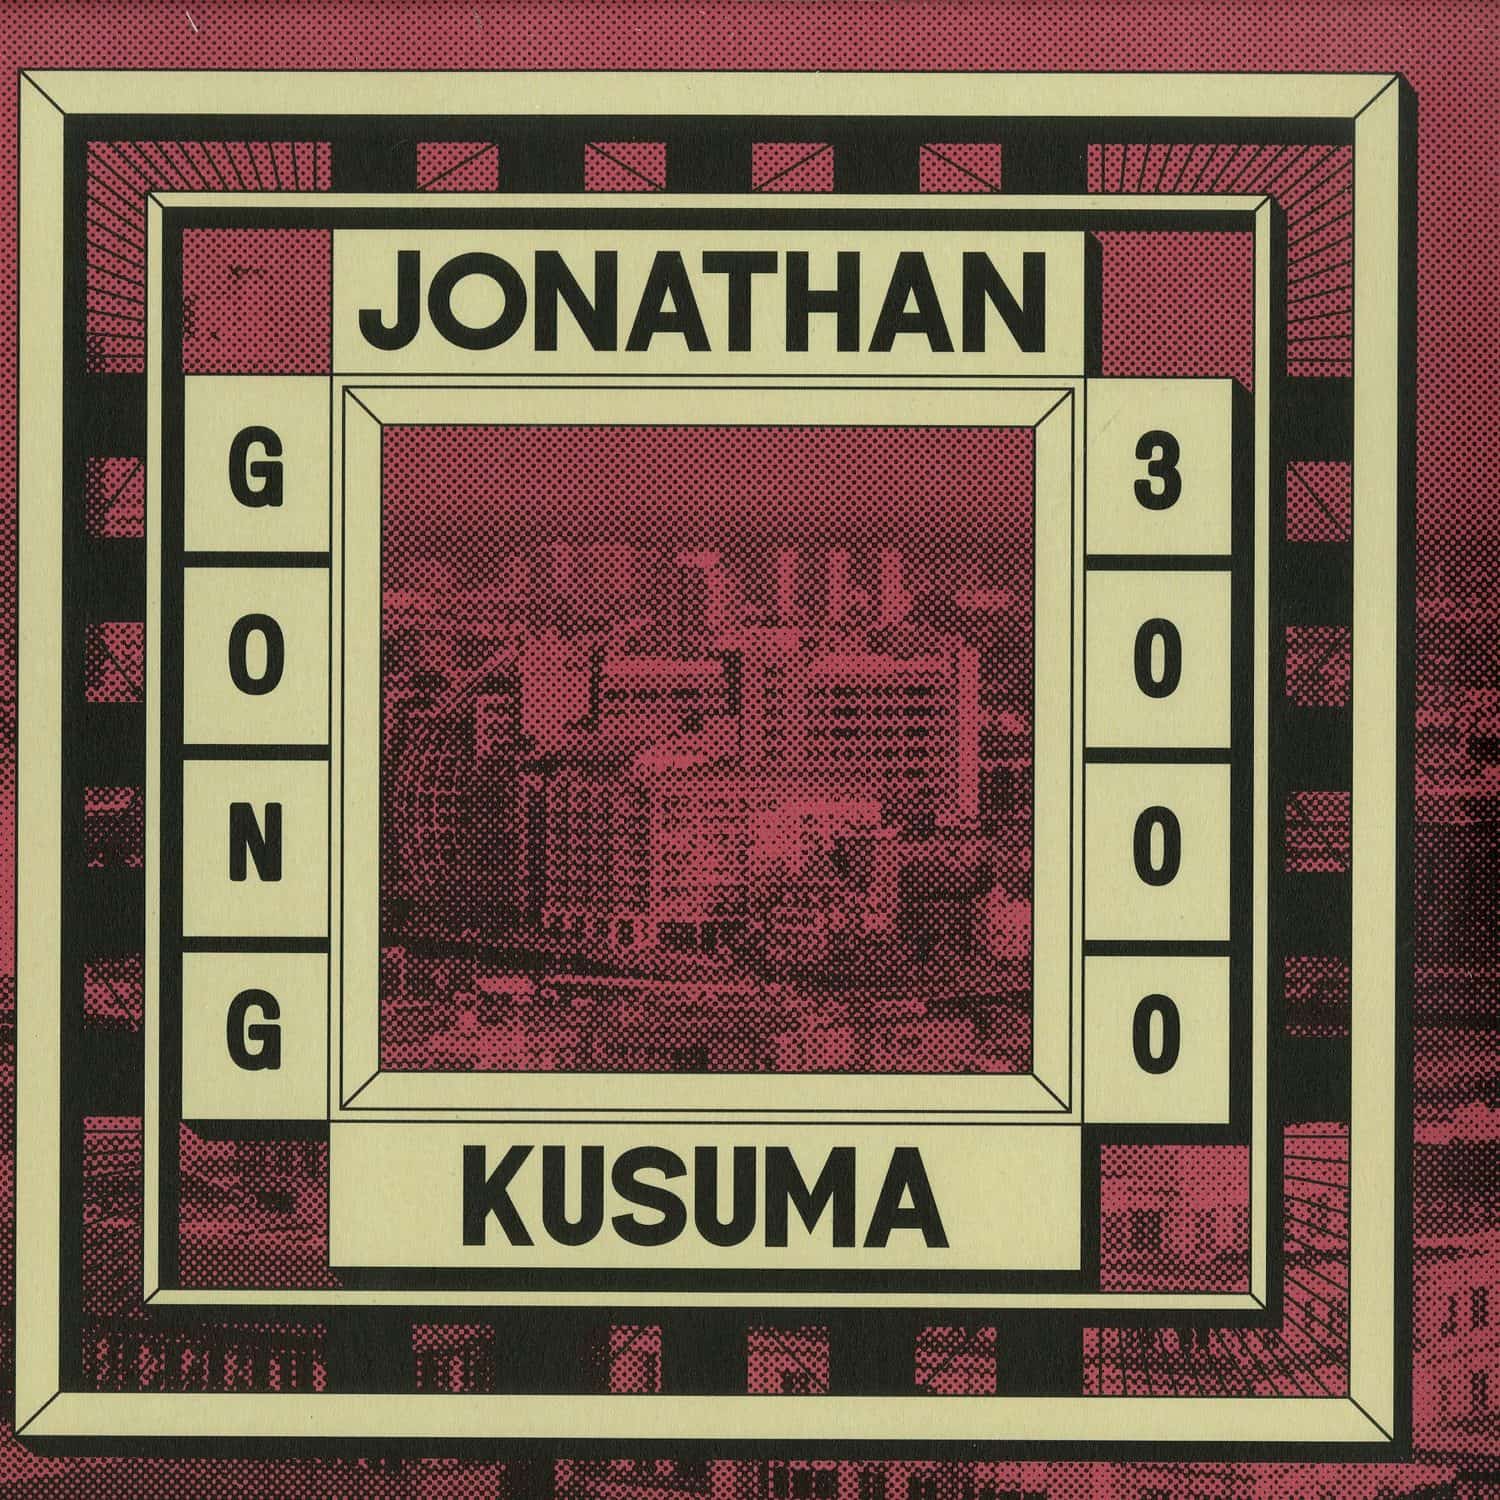 Jonathan Kusuma - GONG 3000 EP